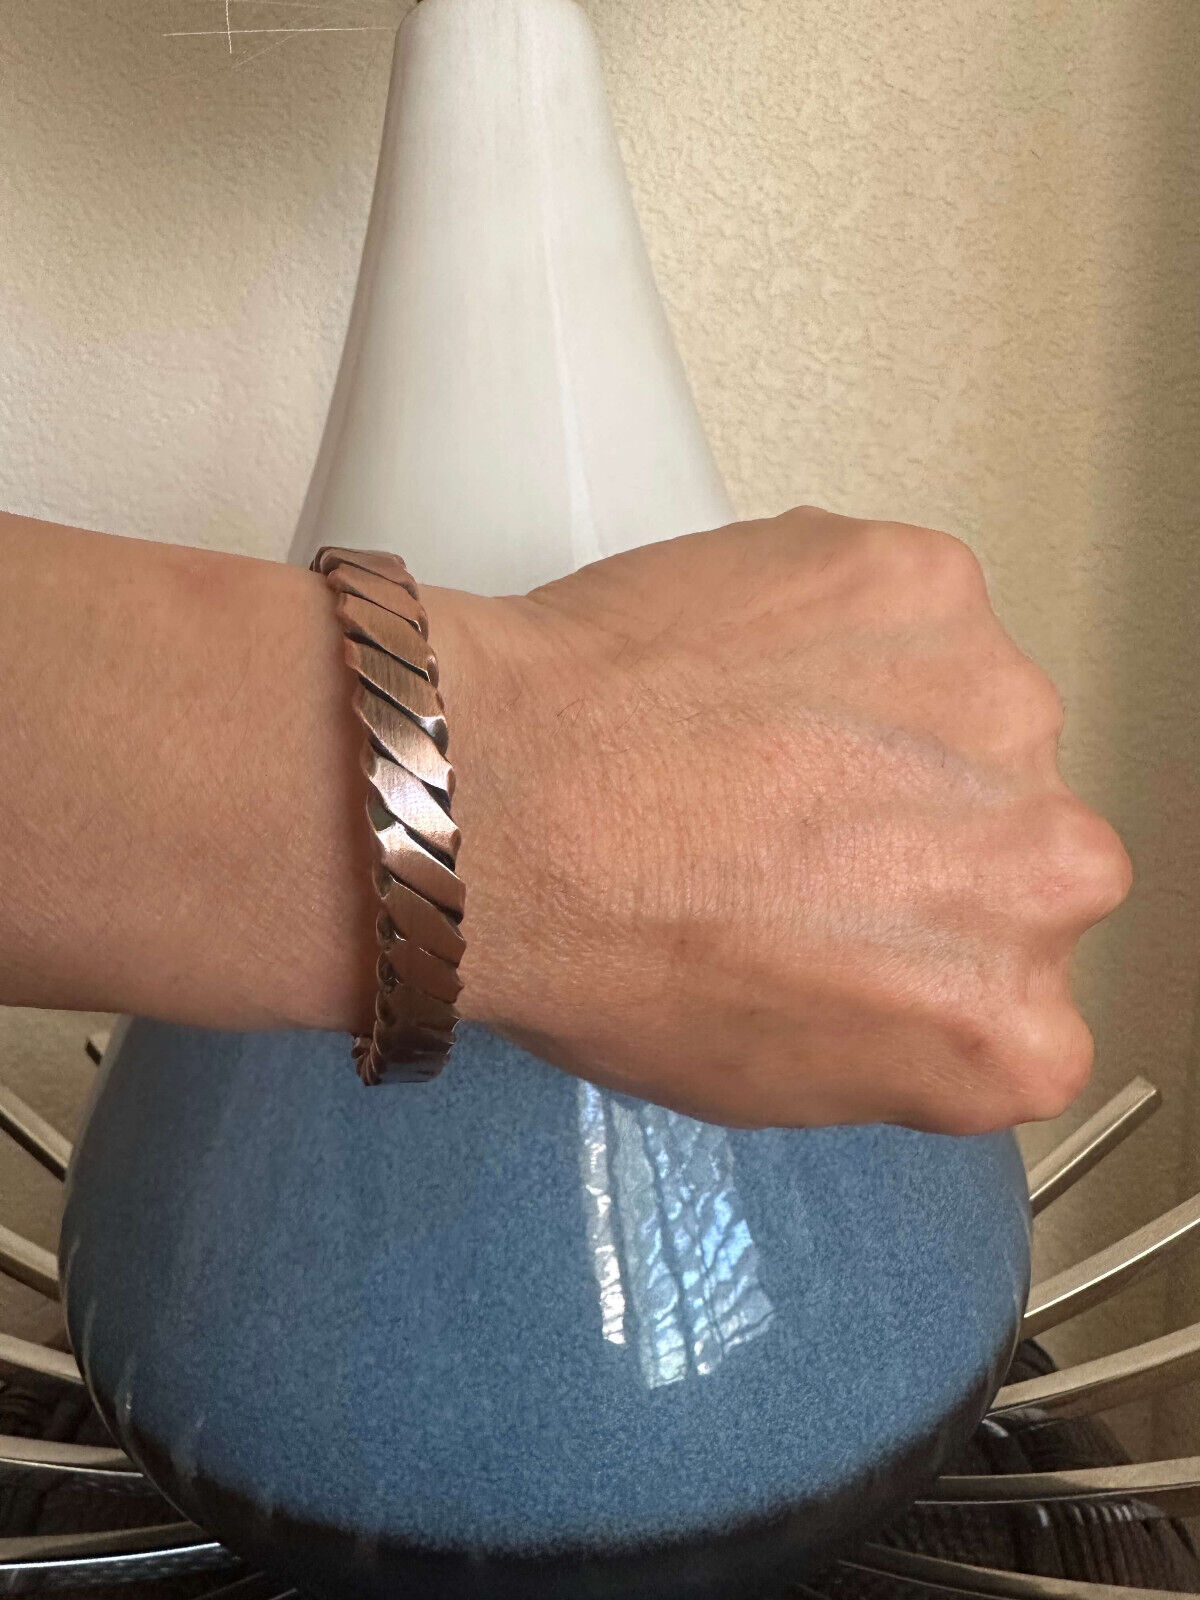 Solid Copper Magnetic Bracelet Men Women Balance Energy Power Joy Christmas Gift Unbranded